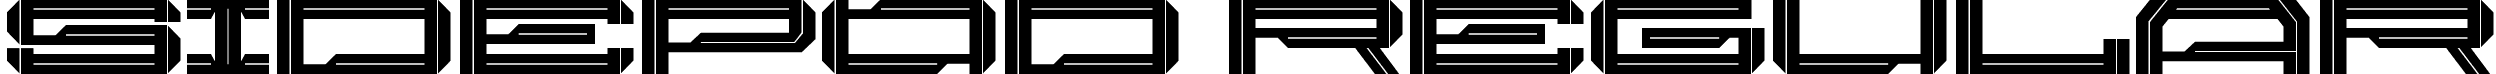 Sidepod Regular font | Sidepod-Personal-Use.ttf